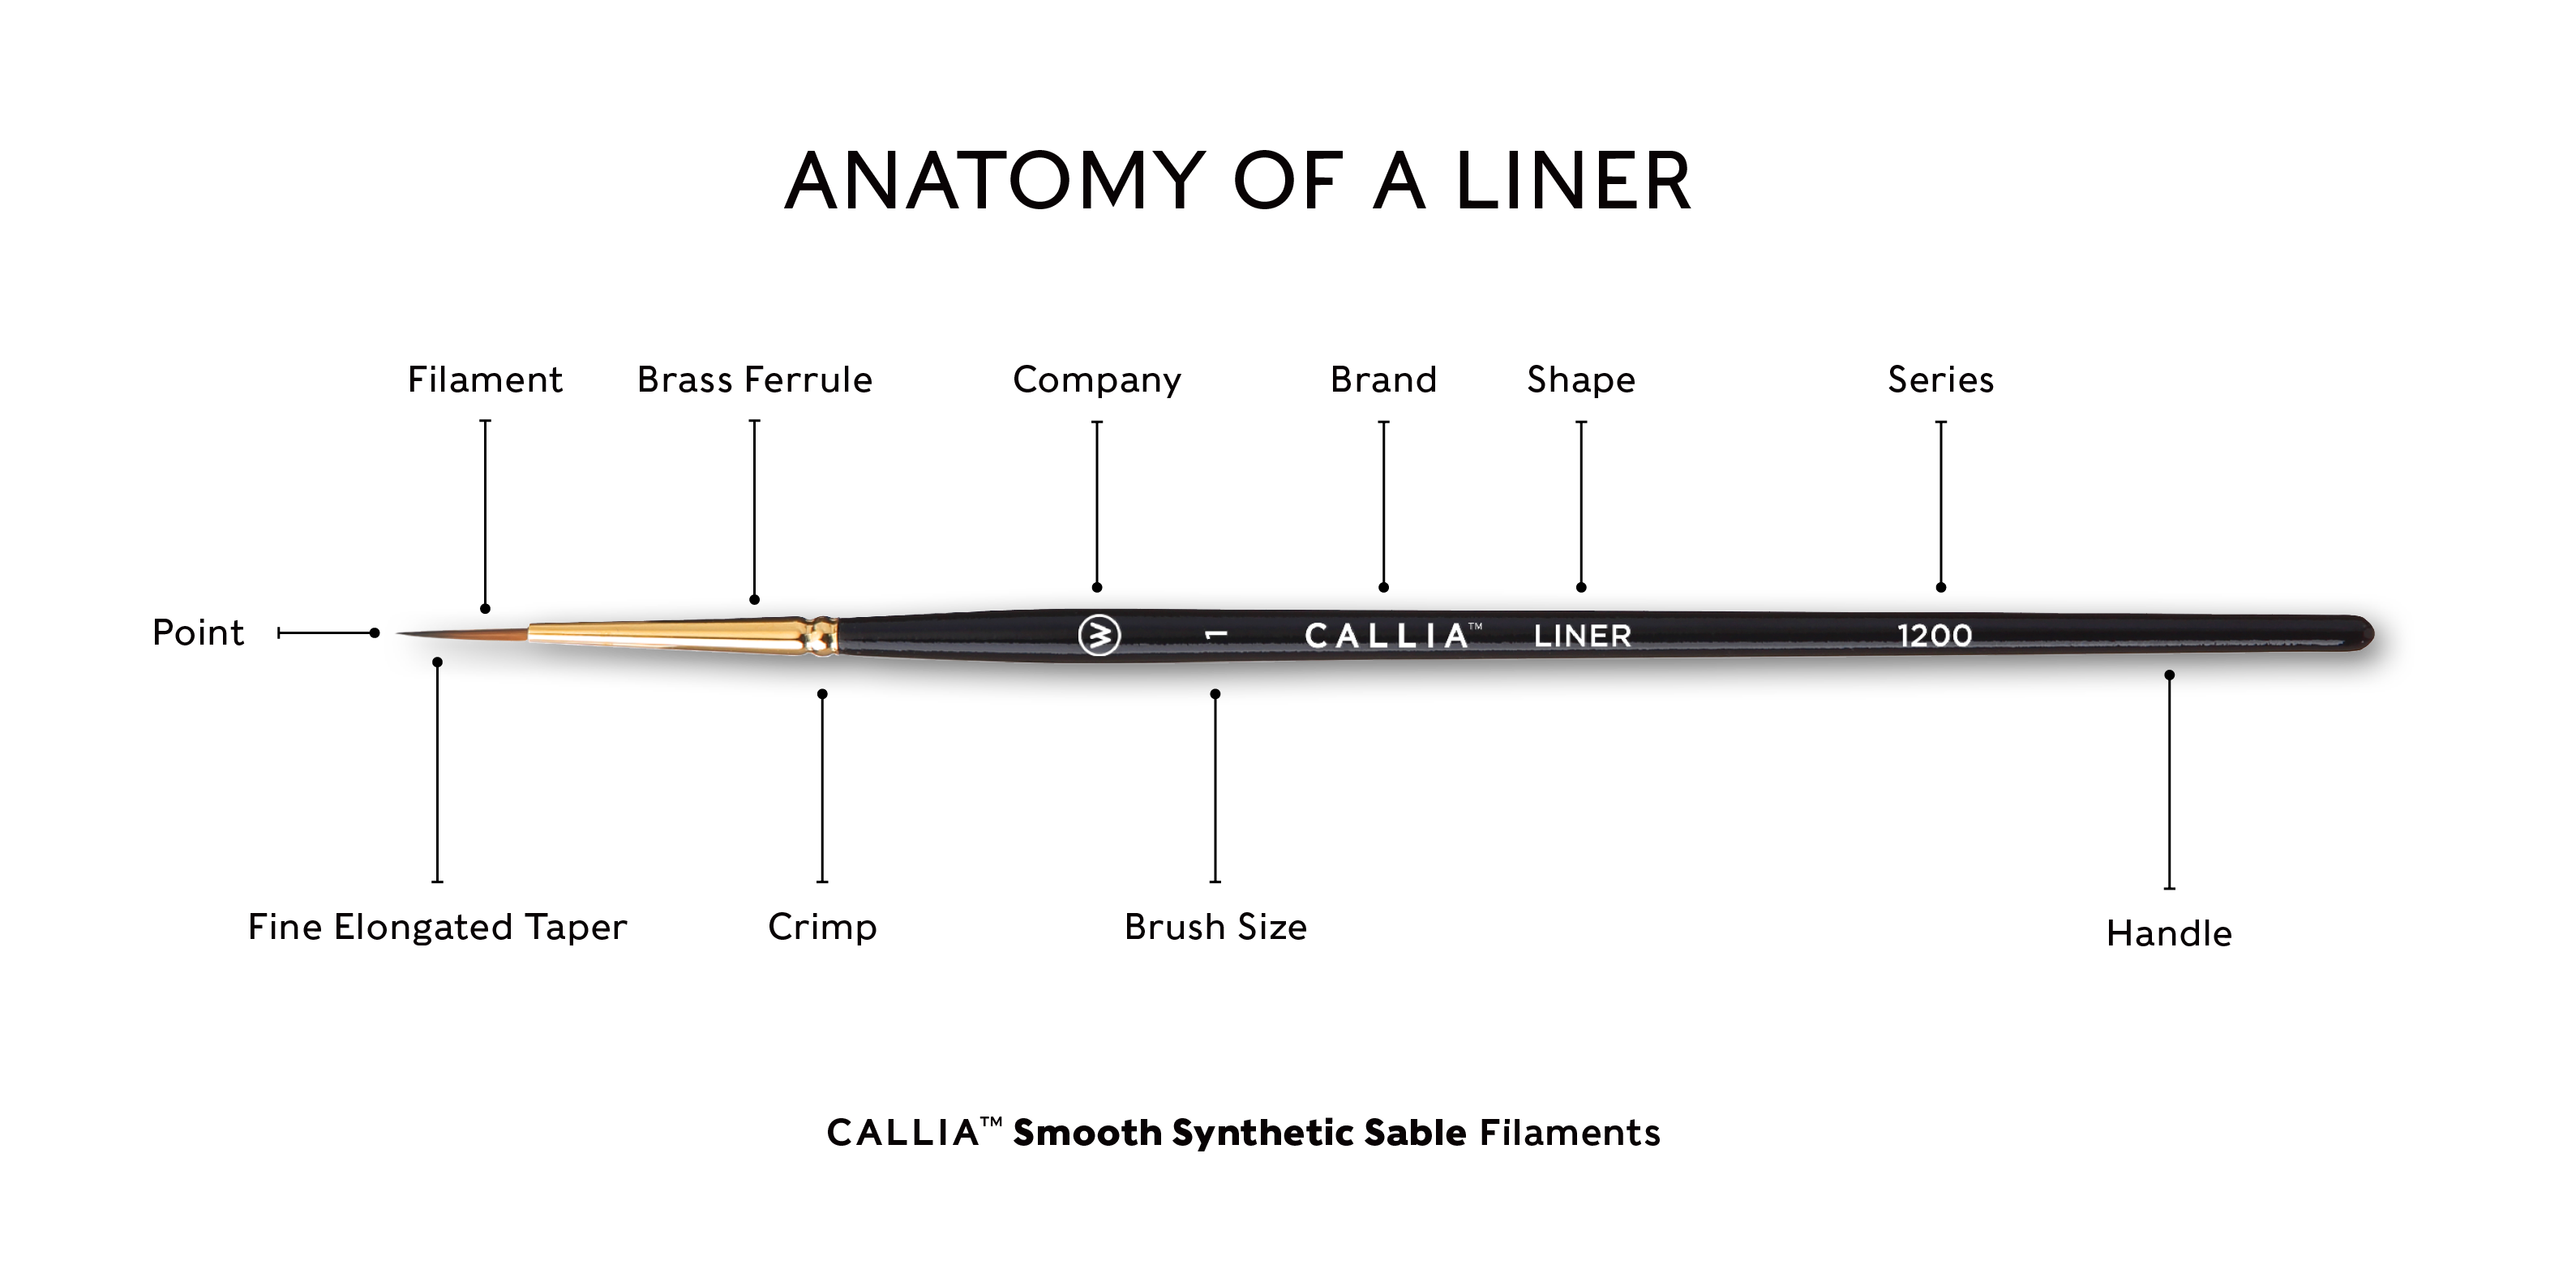 callia liner